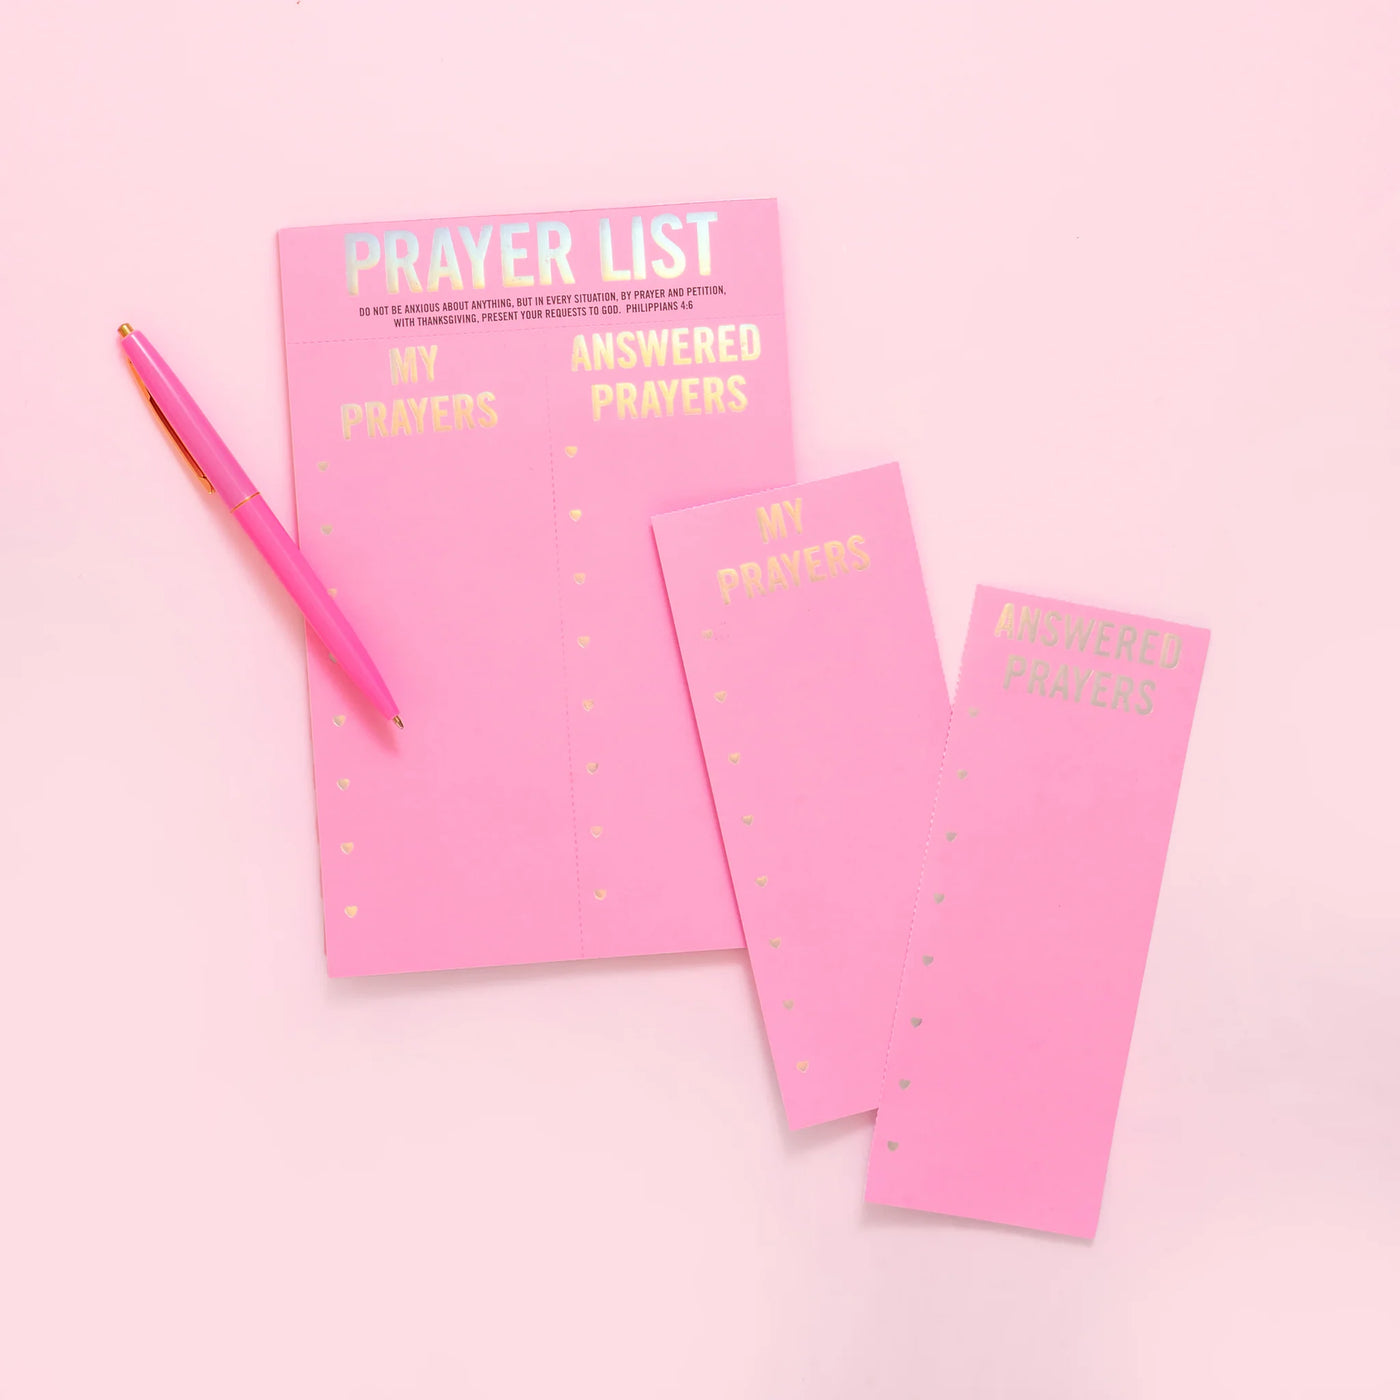 Prayer List Notepad: Taylor Elliott Designs